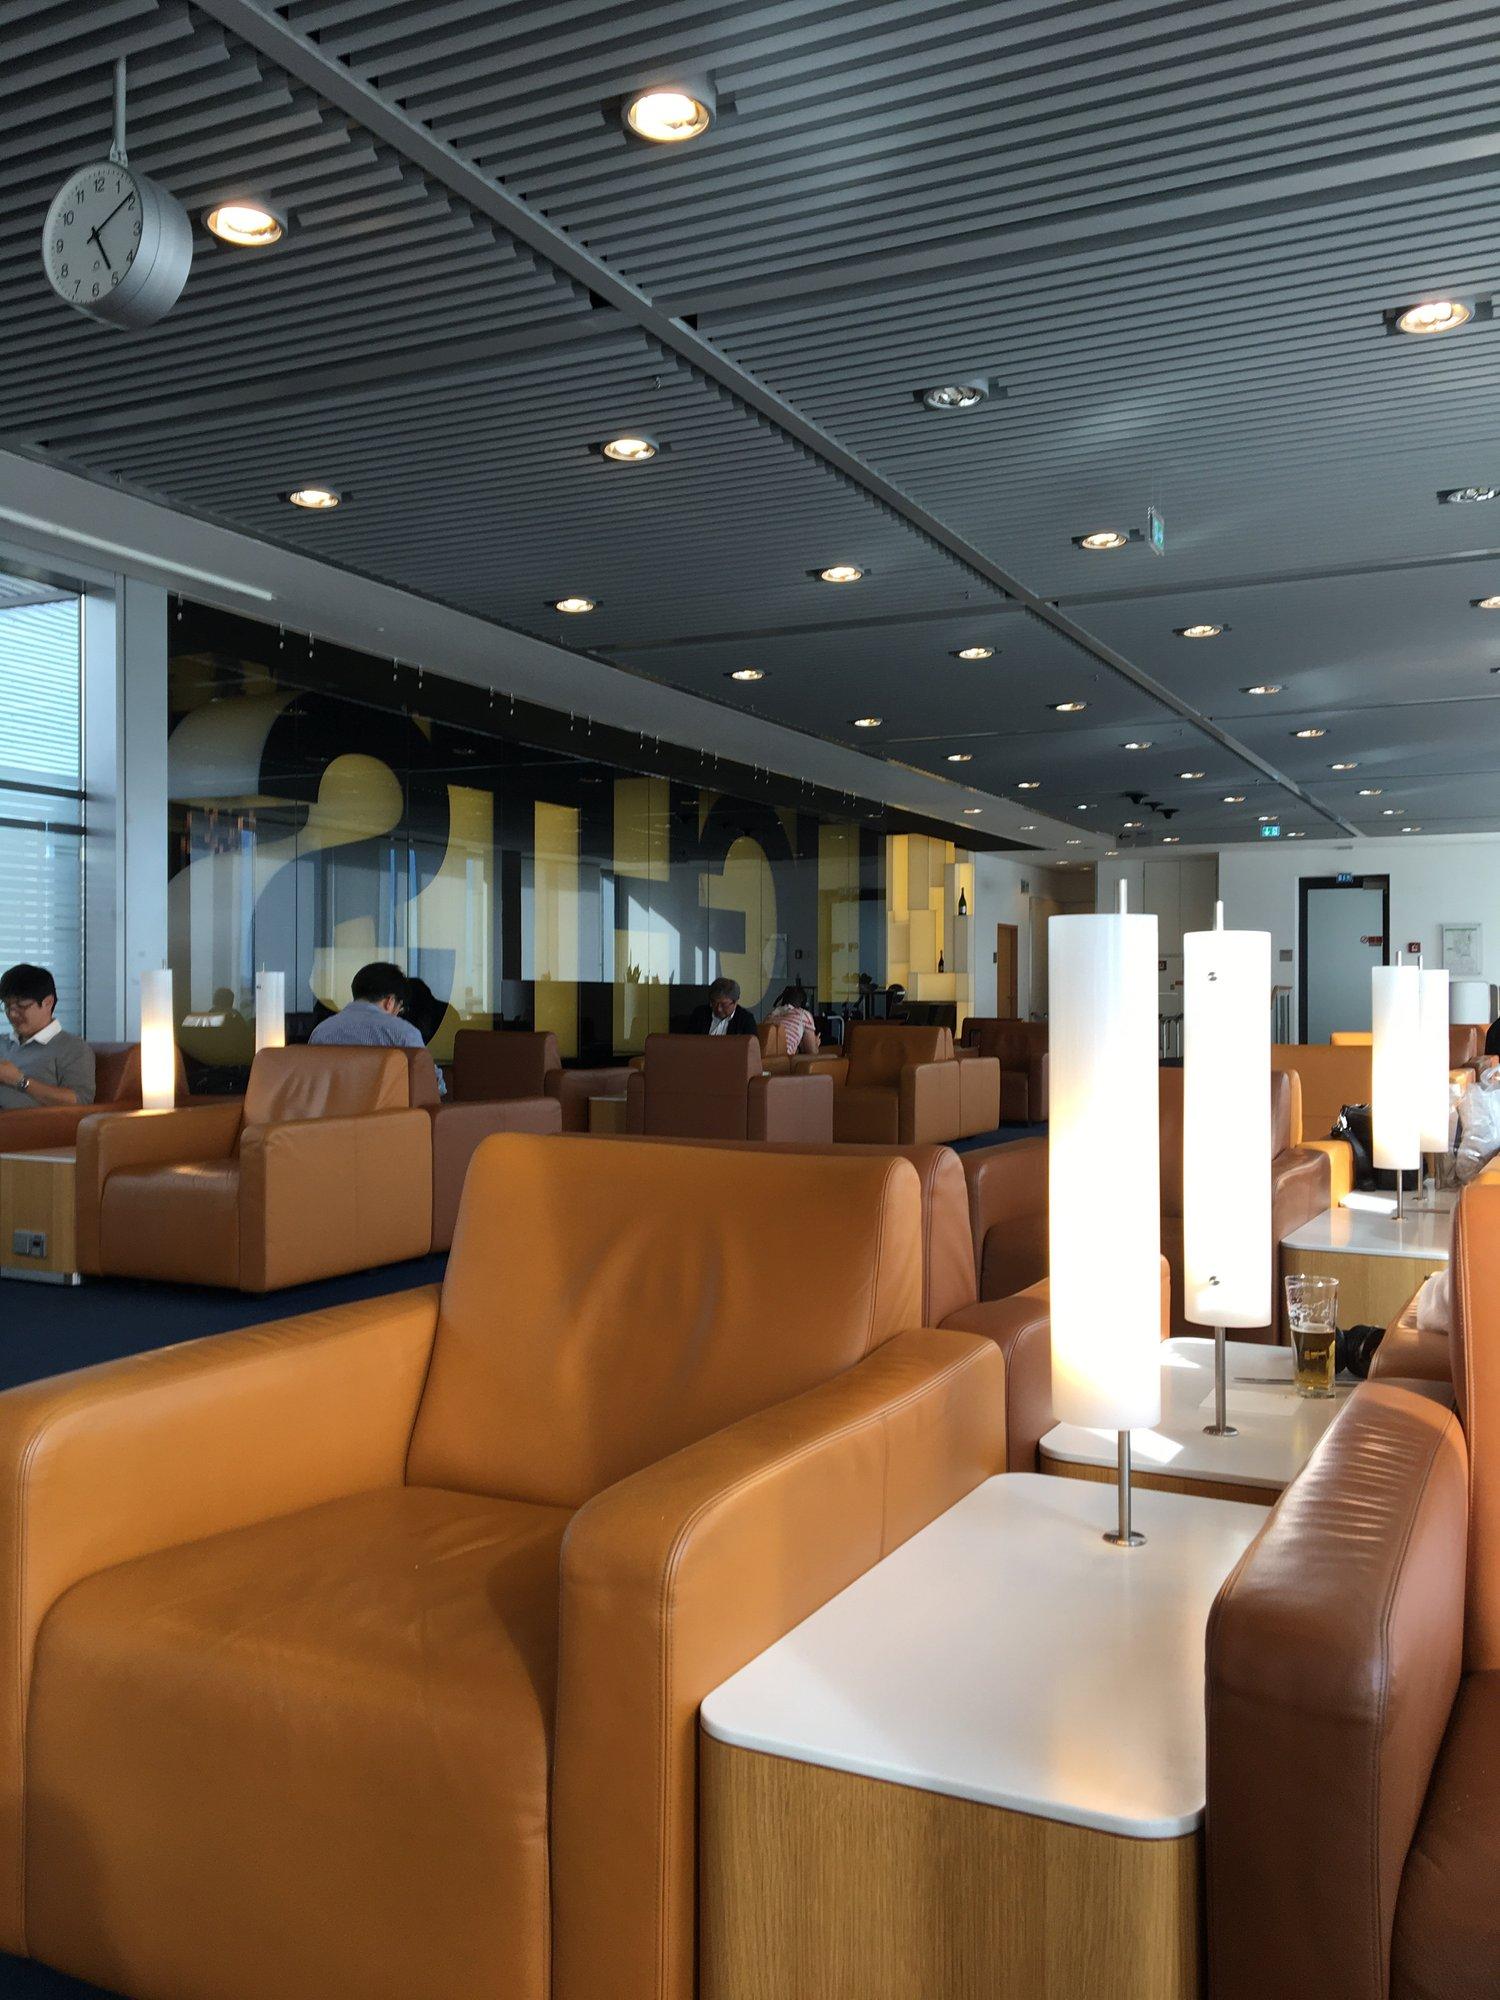 Lufthansa Senator Lounge (Non-Schengen) image 15 of 20